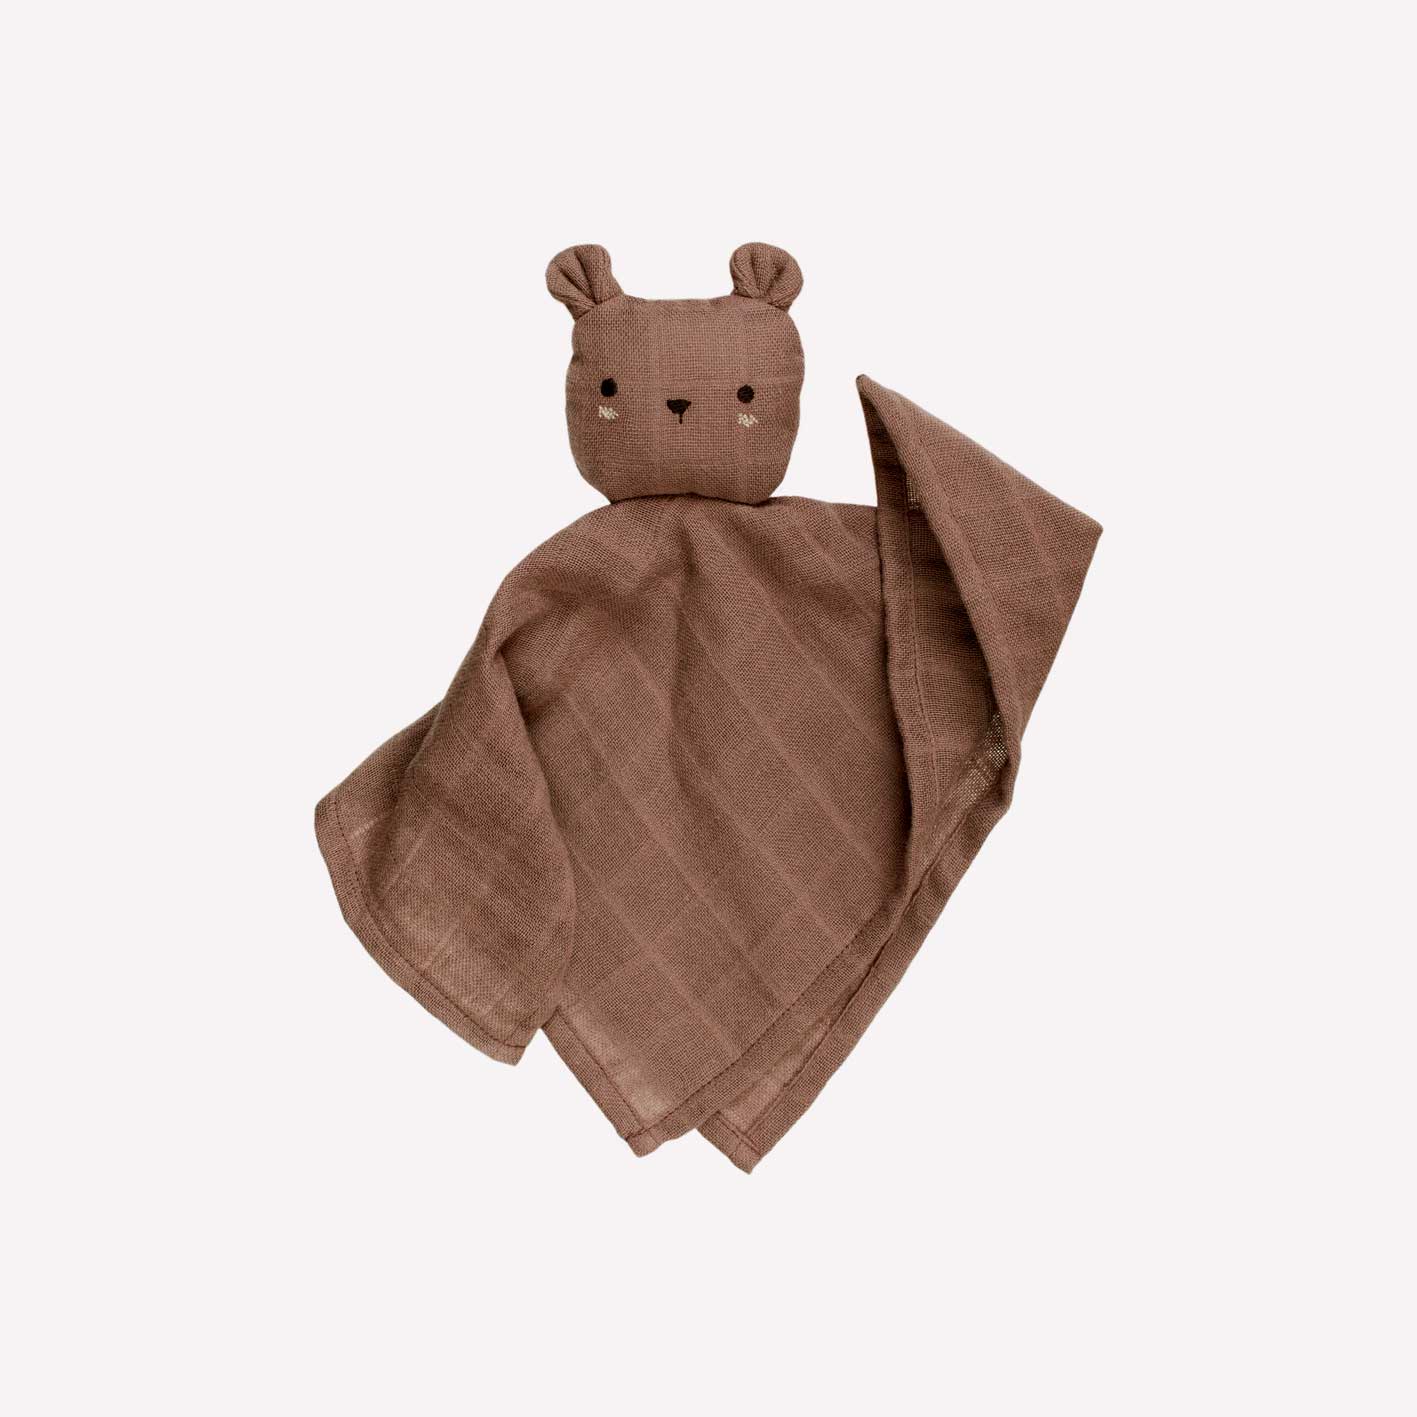 Organic cotton baby cuddle cloth - Teddy Nut